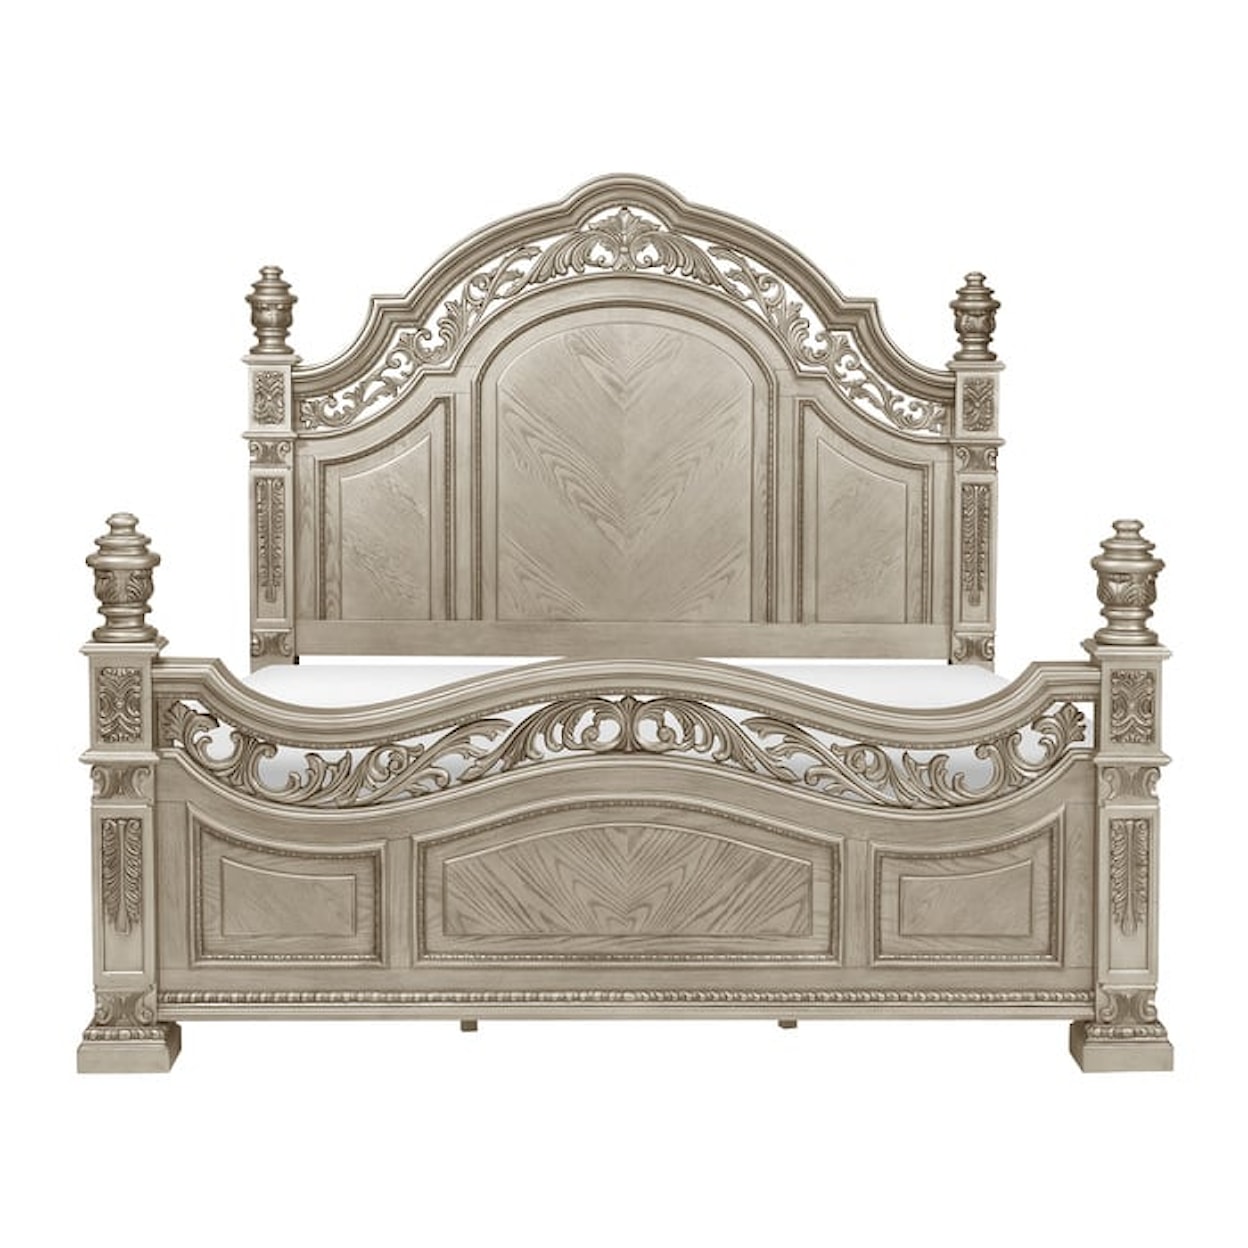 Homelegance Furniture Catalonia 4-Piece Queen Bedroom Set